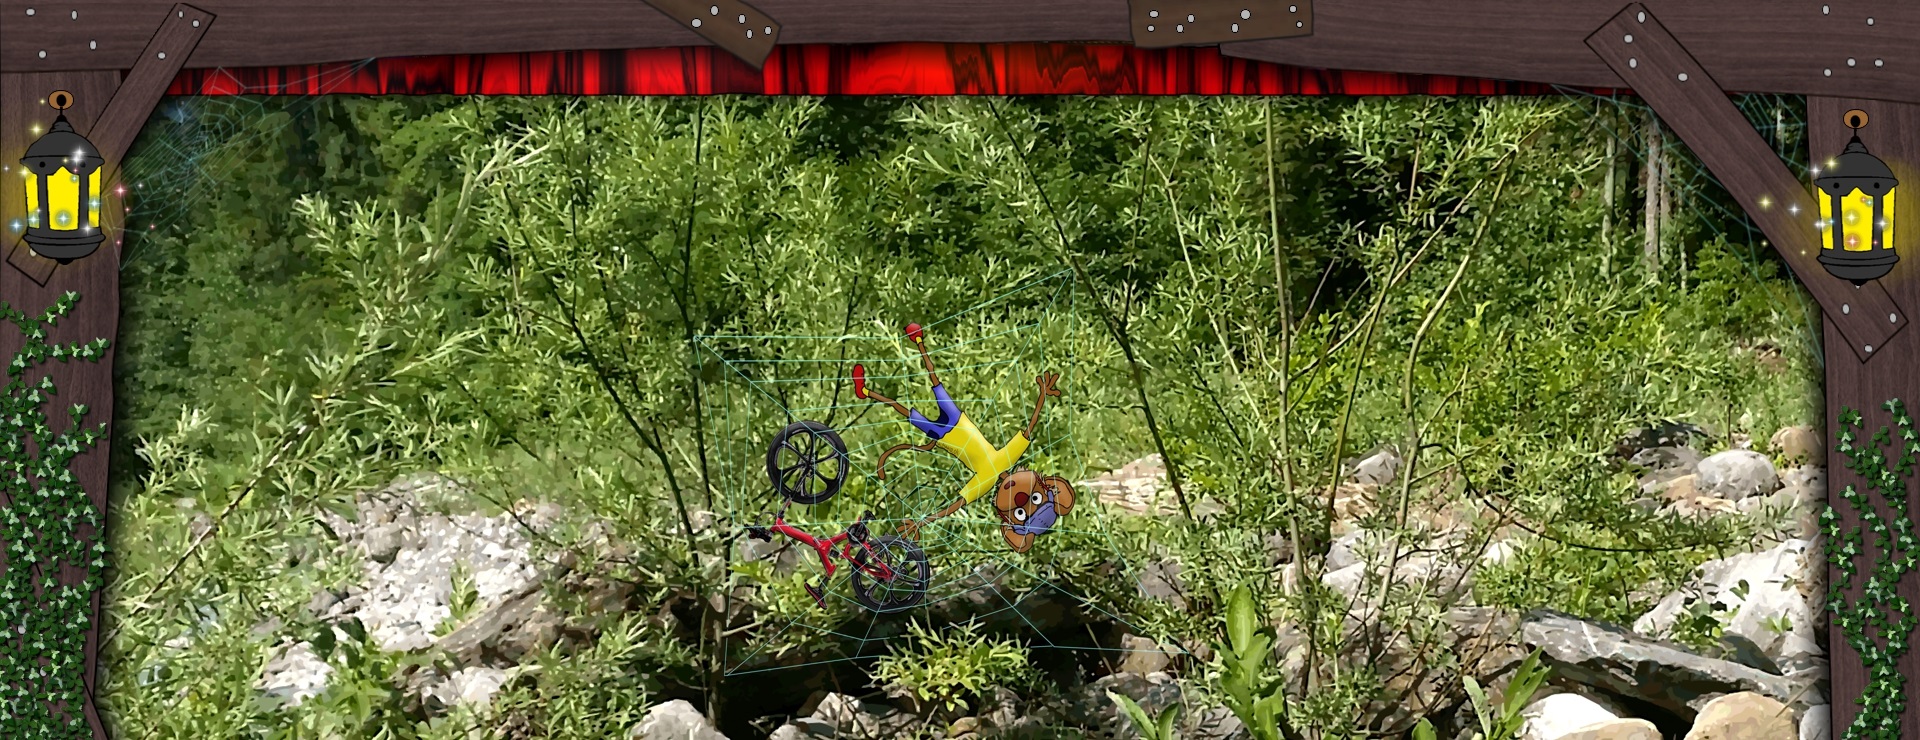 Bannerbild - Extrem-Mountainbike-Sport-Maus, gefangen in einem Spinnennetz